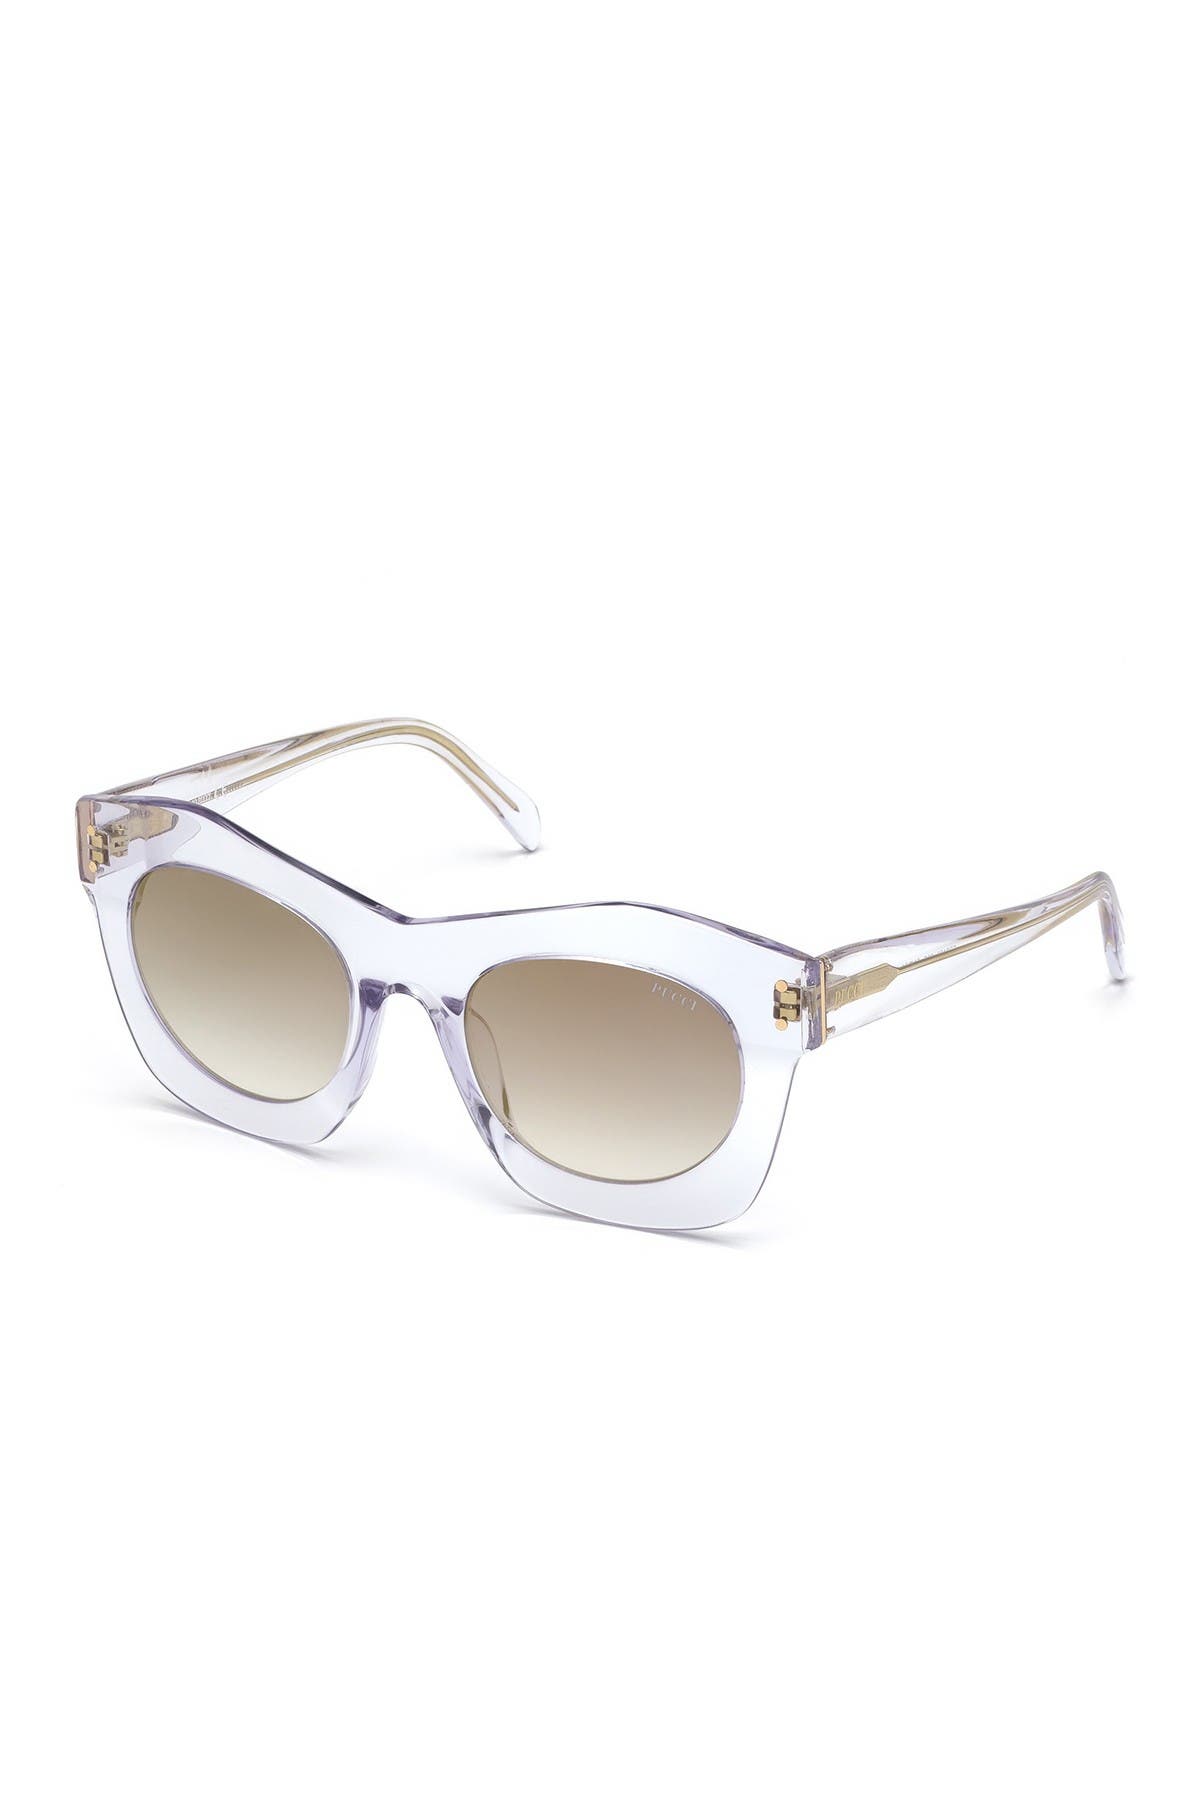 Emilio Pucci 51mm Geometric Sunglasses In Whto/smkmr